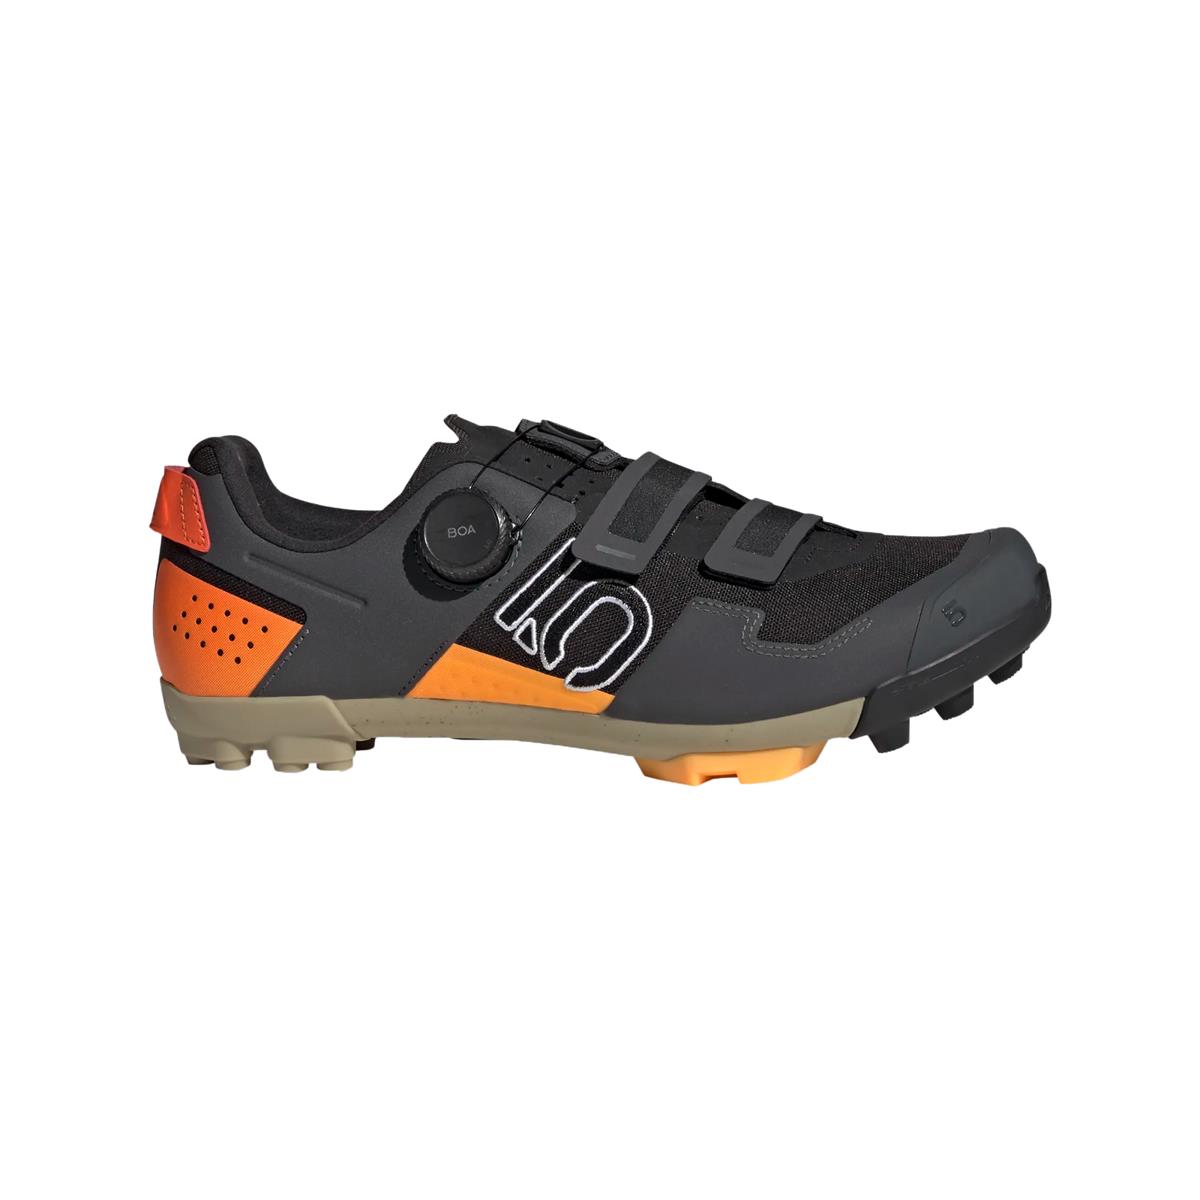 Clip 5.10 Kestrel Boa MTB Shoes Black/Orange Size 43